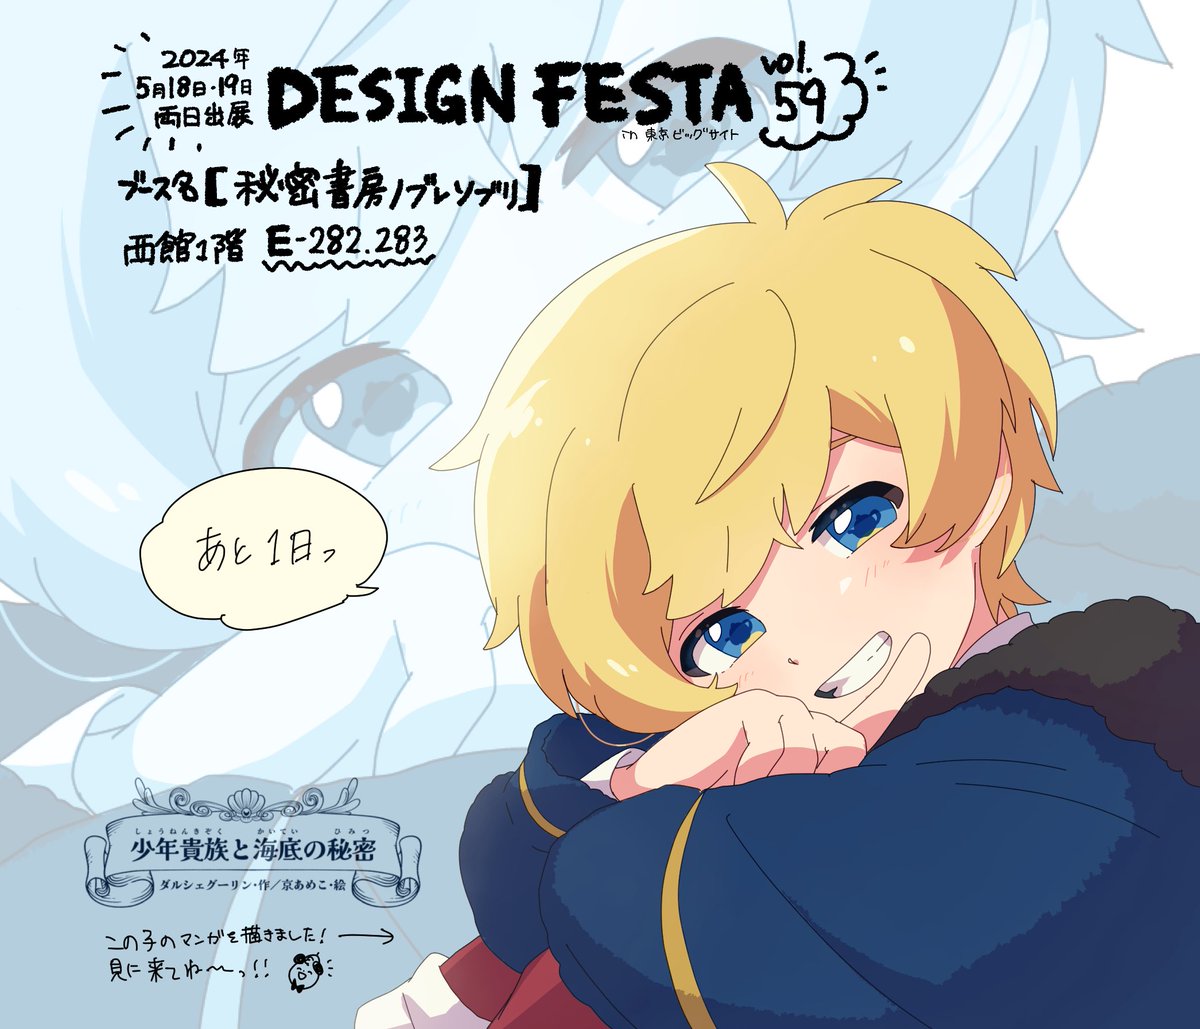 おはよーーございます！ みやこあめこです❗️☀️✨✨ いよいよ！明日は！デザフェス〜🥳❣️ 愛と情熱を込めに込めた漫画本 📚【#少年貴族と海底の秘密】発売日‼️ 東京ビッグサイトにお越しの方は 是非お立ち寄りください🌸🌸 #デザフェス59 #デザインフェスタ たのしみーーーーー！！！！！！！